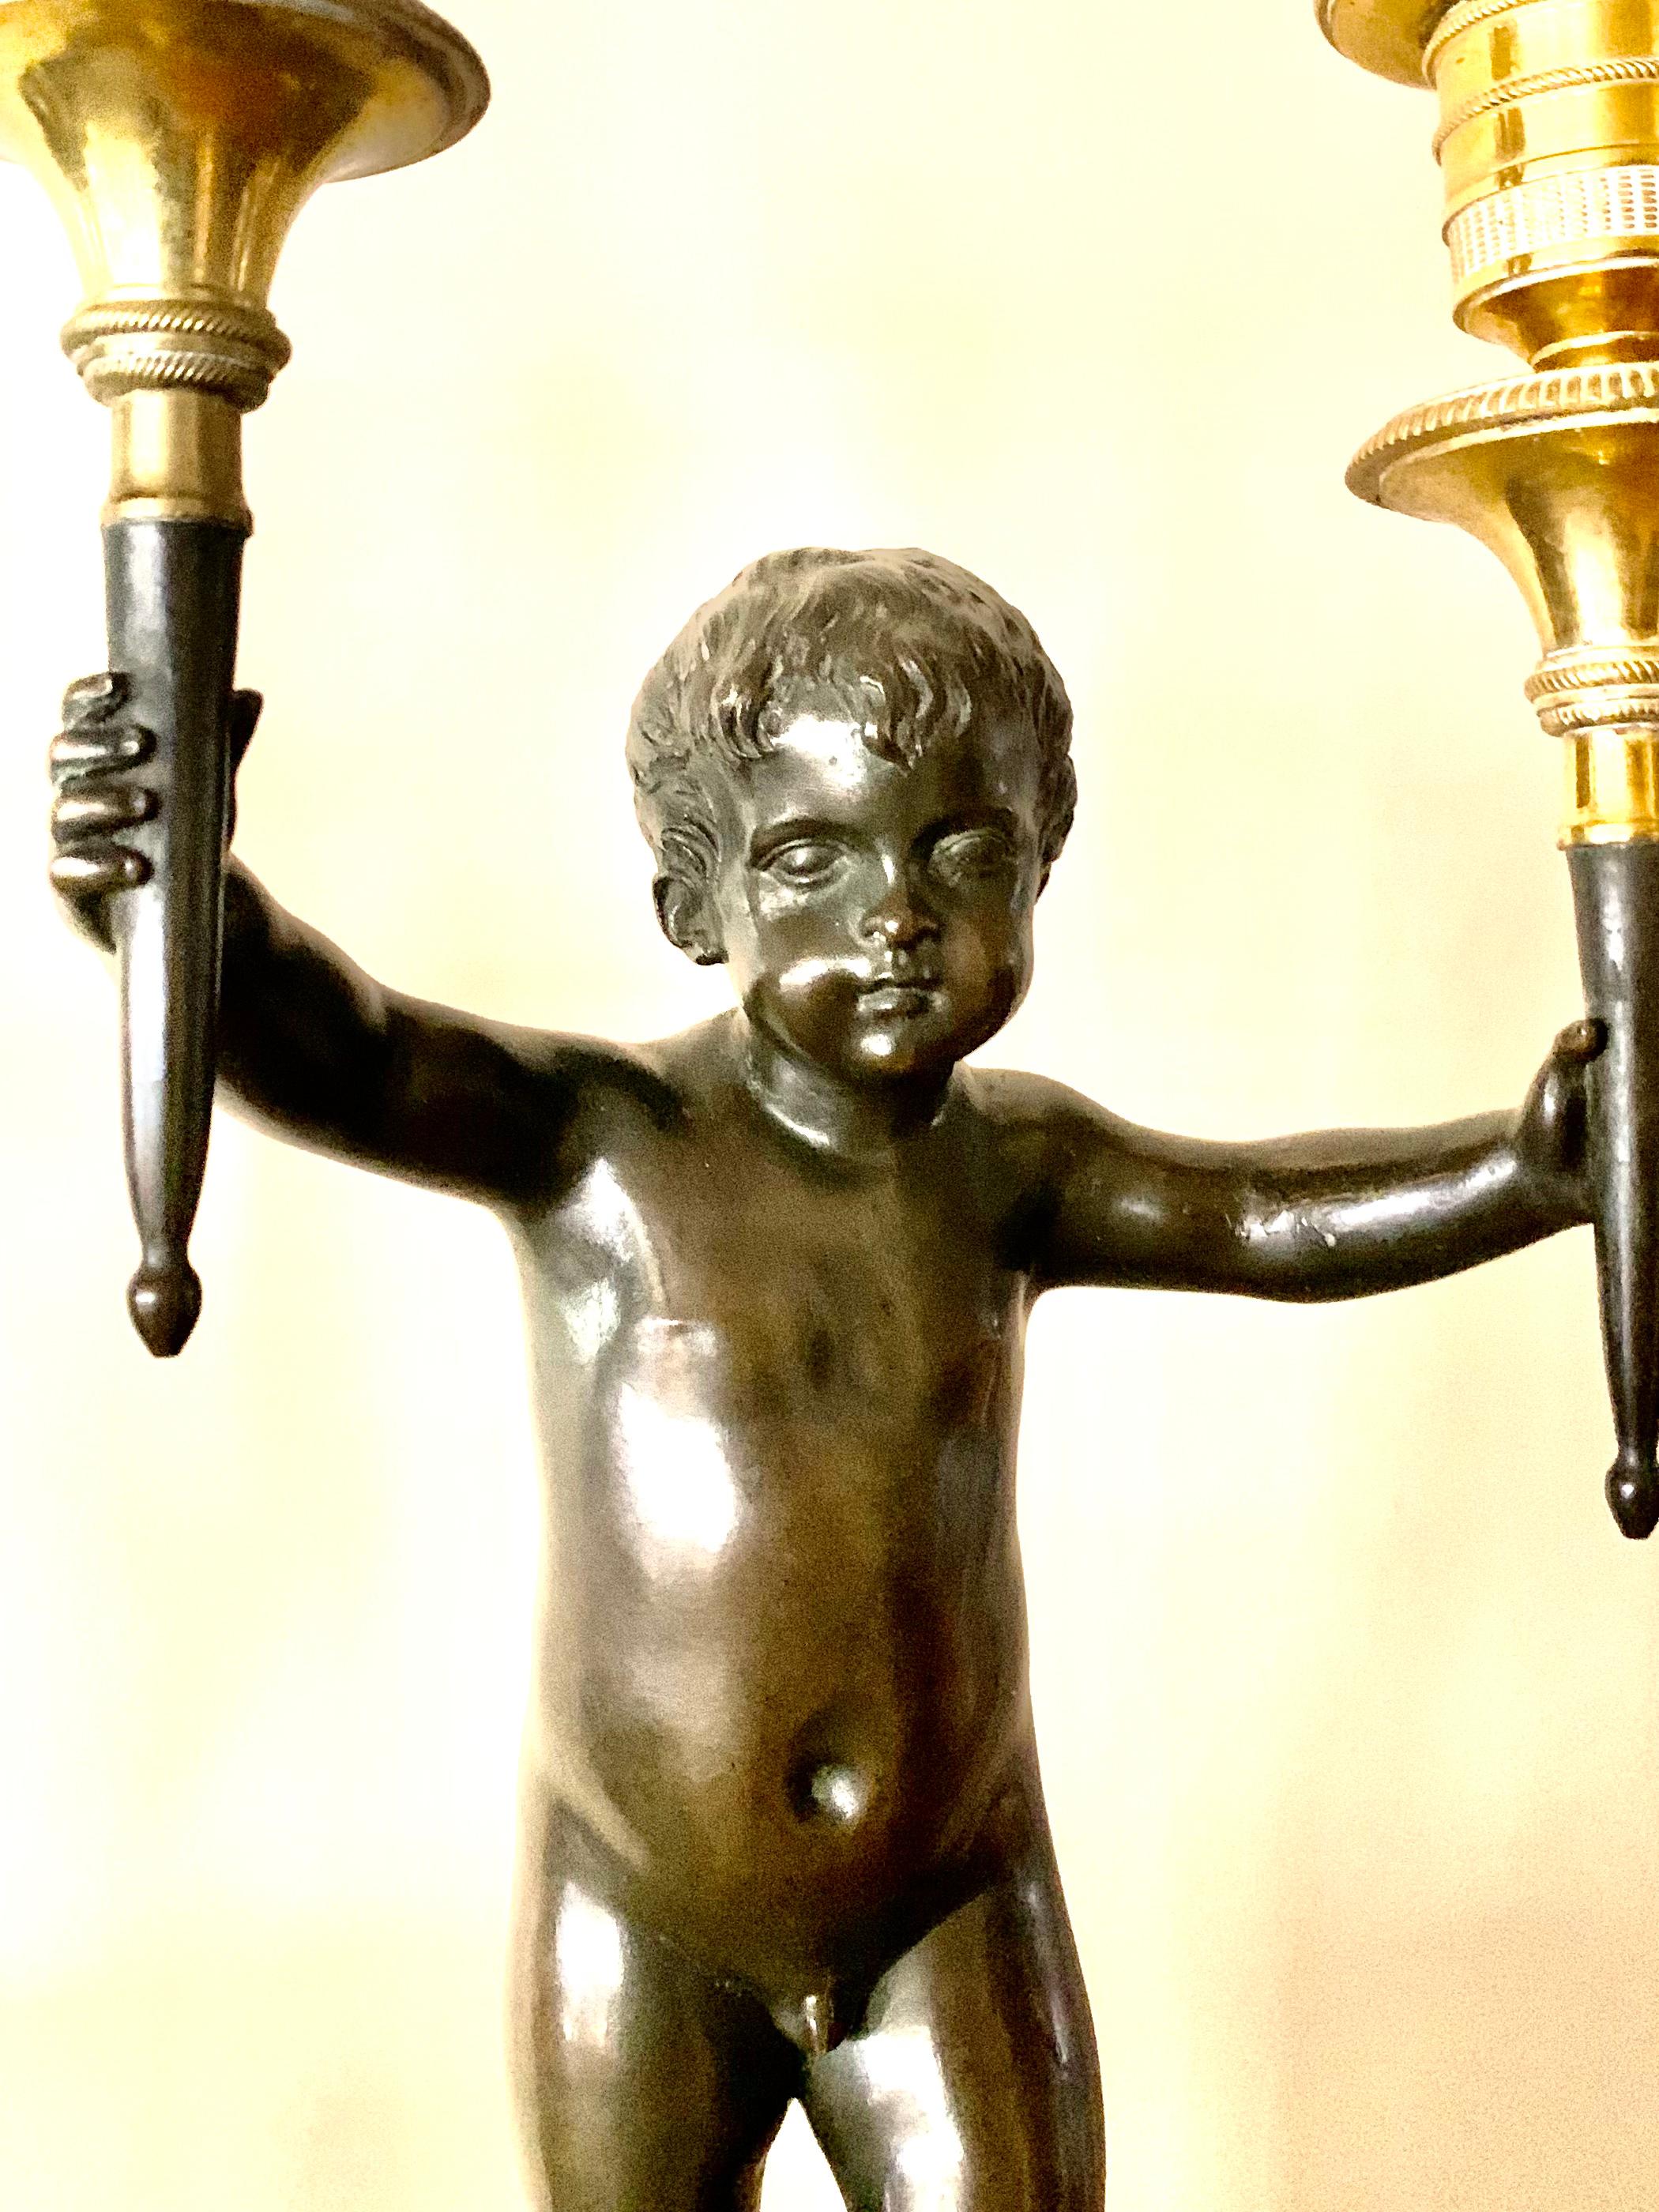 Feines Paar von Dore und patiniert Bronze figuralen Putten 18. Jahrhundert zwei Licht Kandelaber auf Original Saint Anne Marmorsockel. Jeder einzelne ist als klassischer Jüngling modelliert, der ein Paar fackelförmige Dore-Bronze-Kandelaber auf